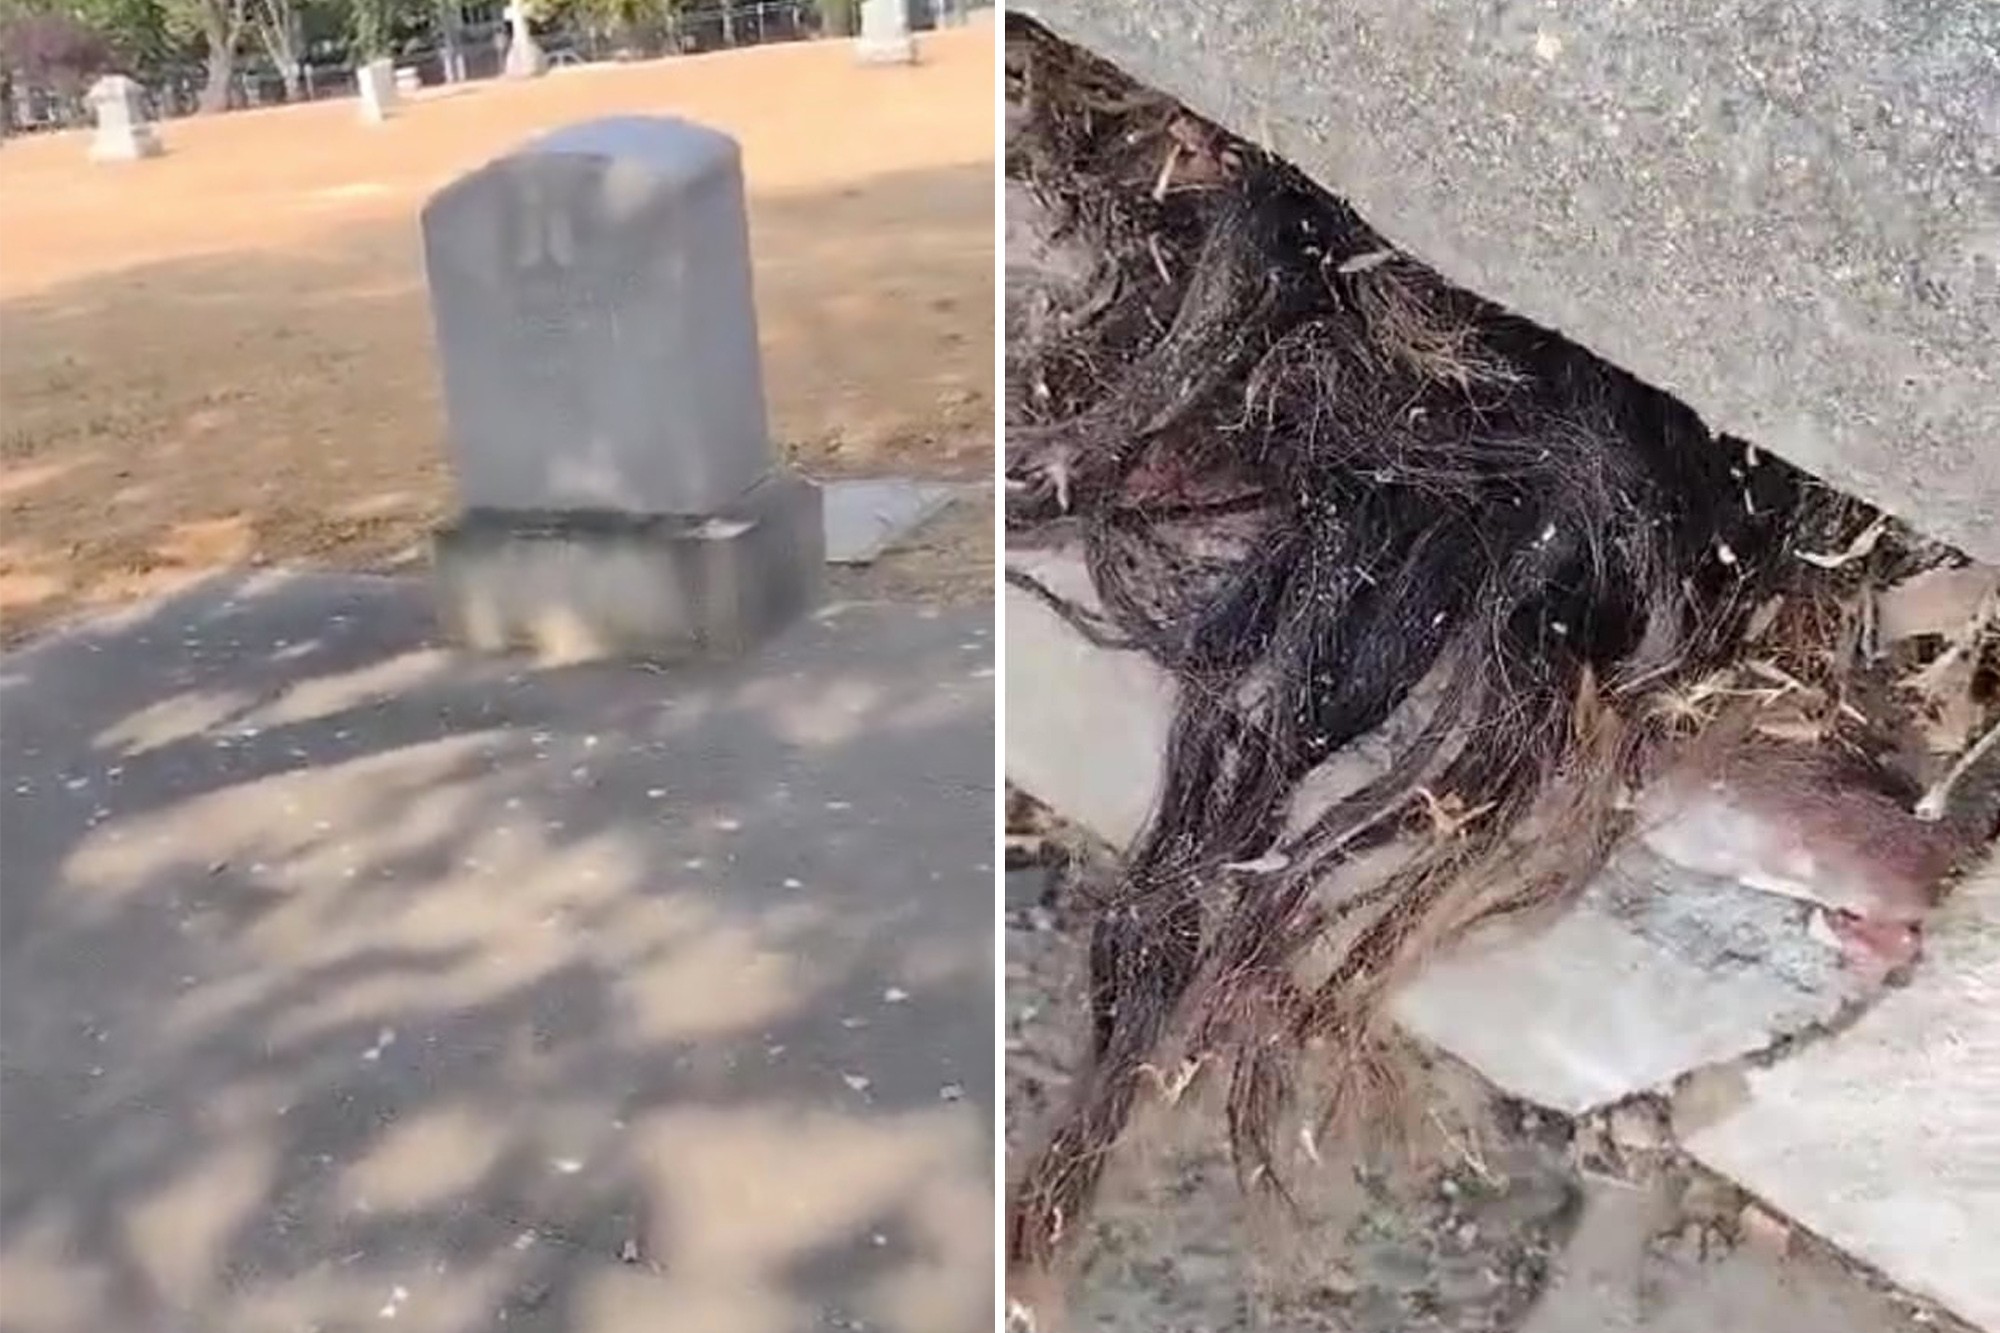 “El susto de su vida”: Descubrió cabello humano sobresaliendo de una tumba de hace 100 años en California